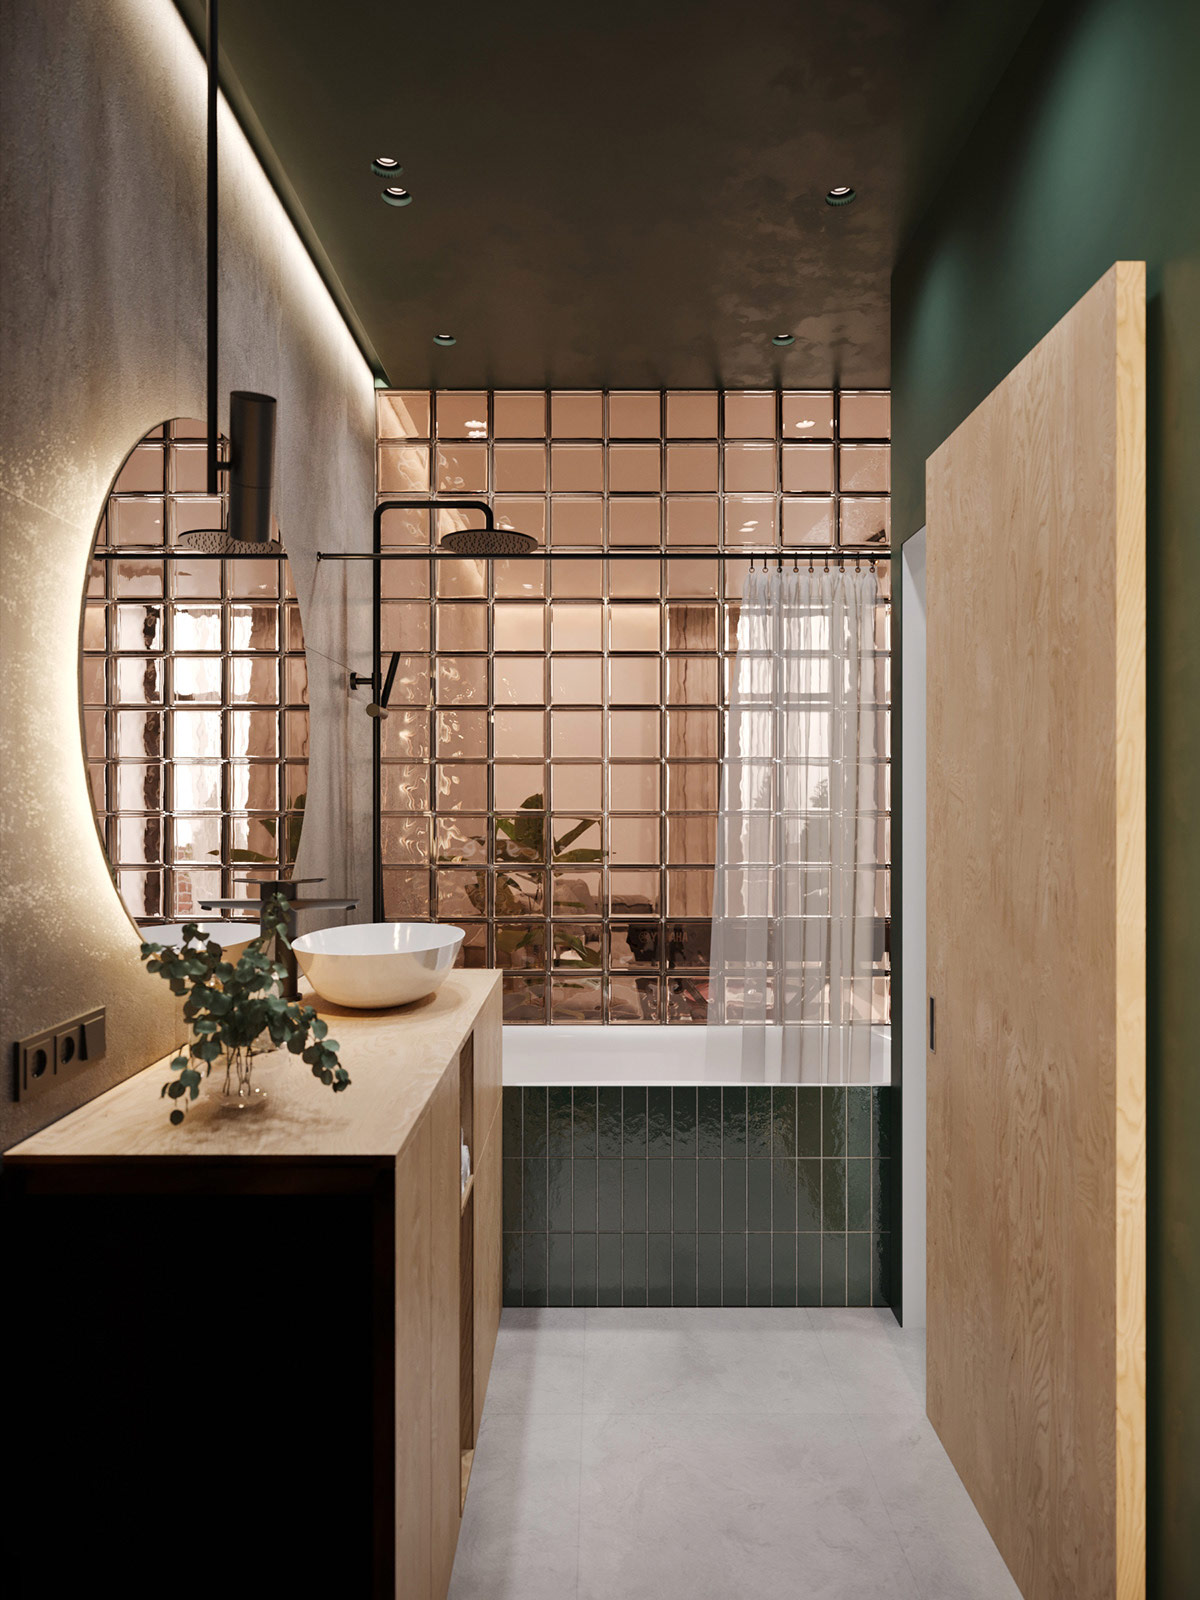 hình ảnh phòng tắm tông màu xanh lá chủ đạo, tường gạch kính lấy sáng từ phòng khách